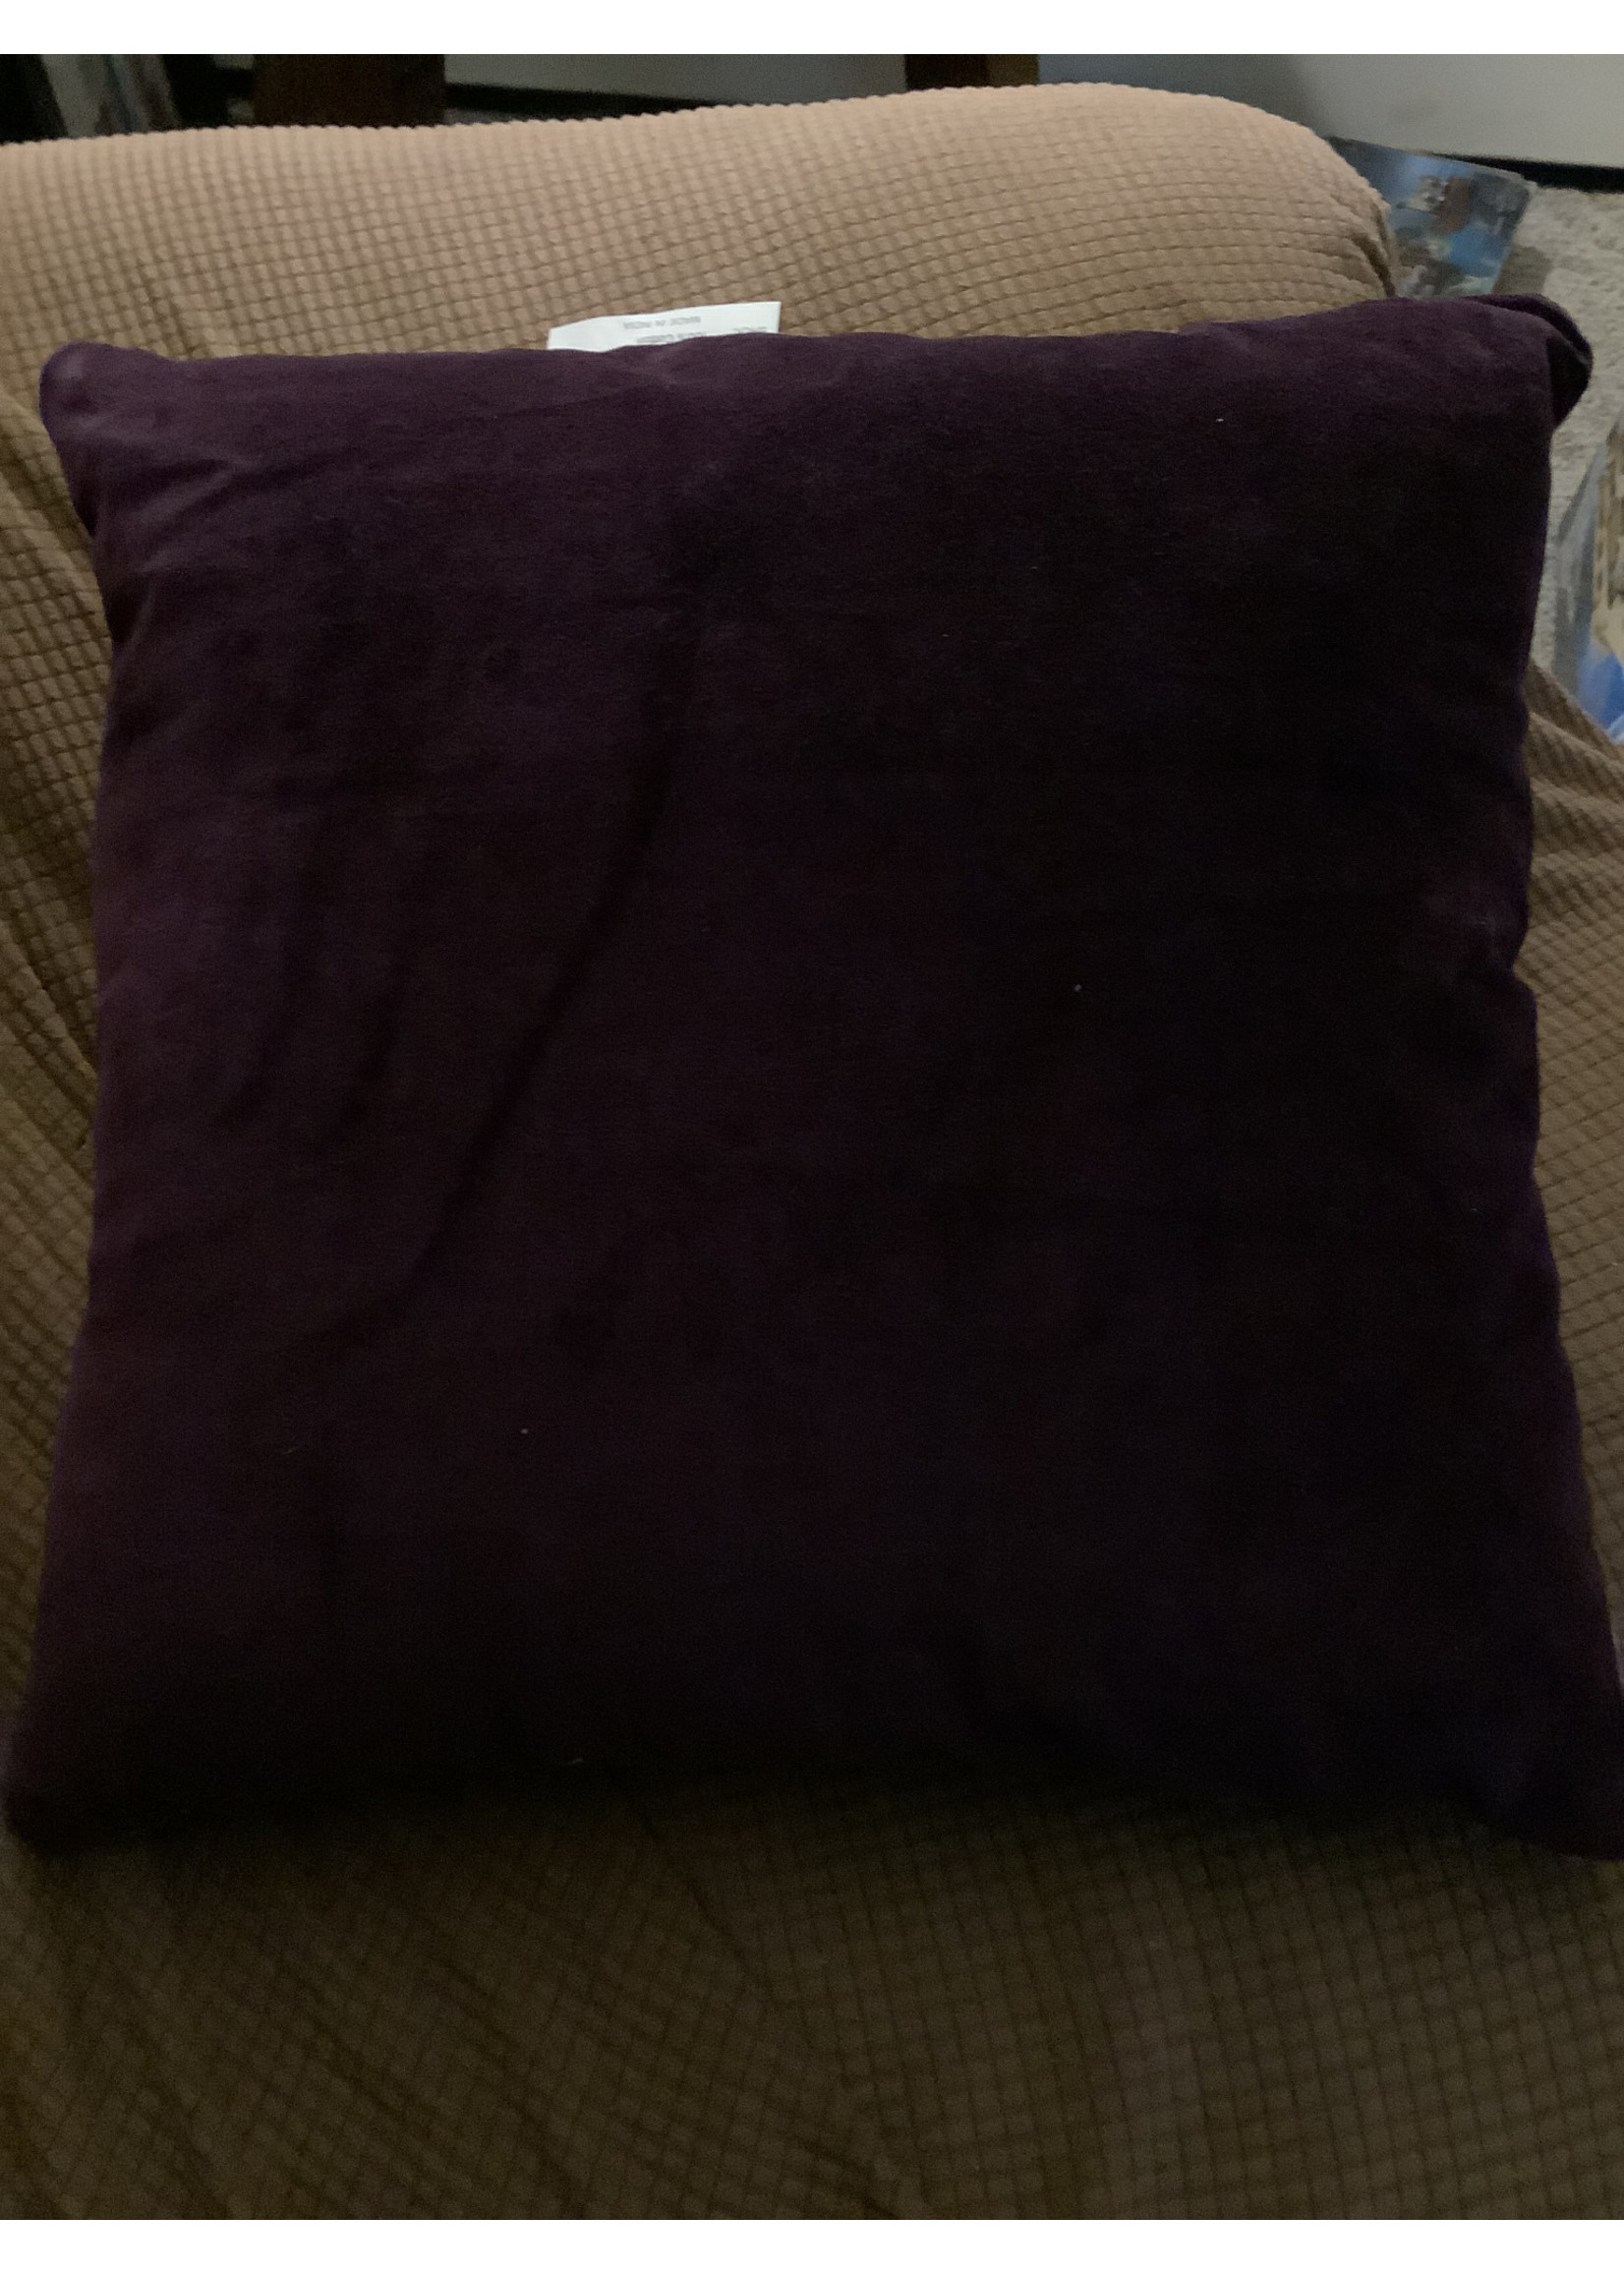 Decor Accent Pillow Square Purple